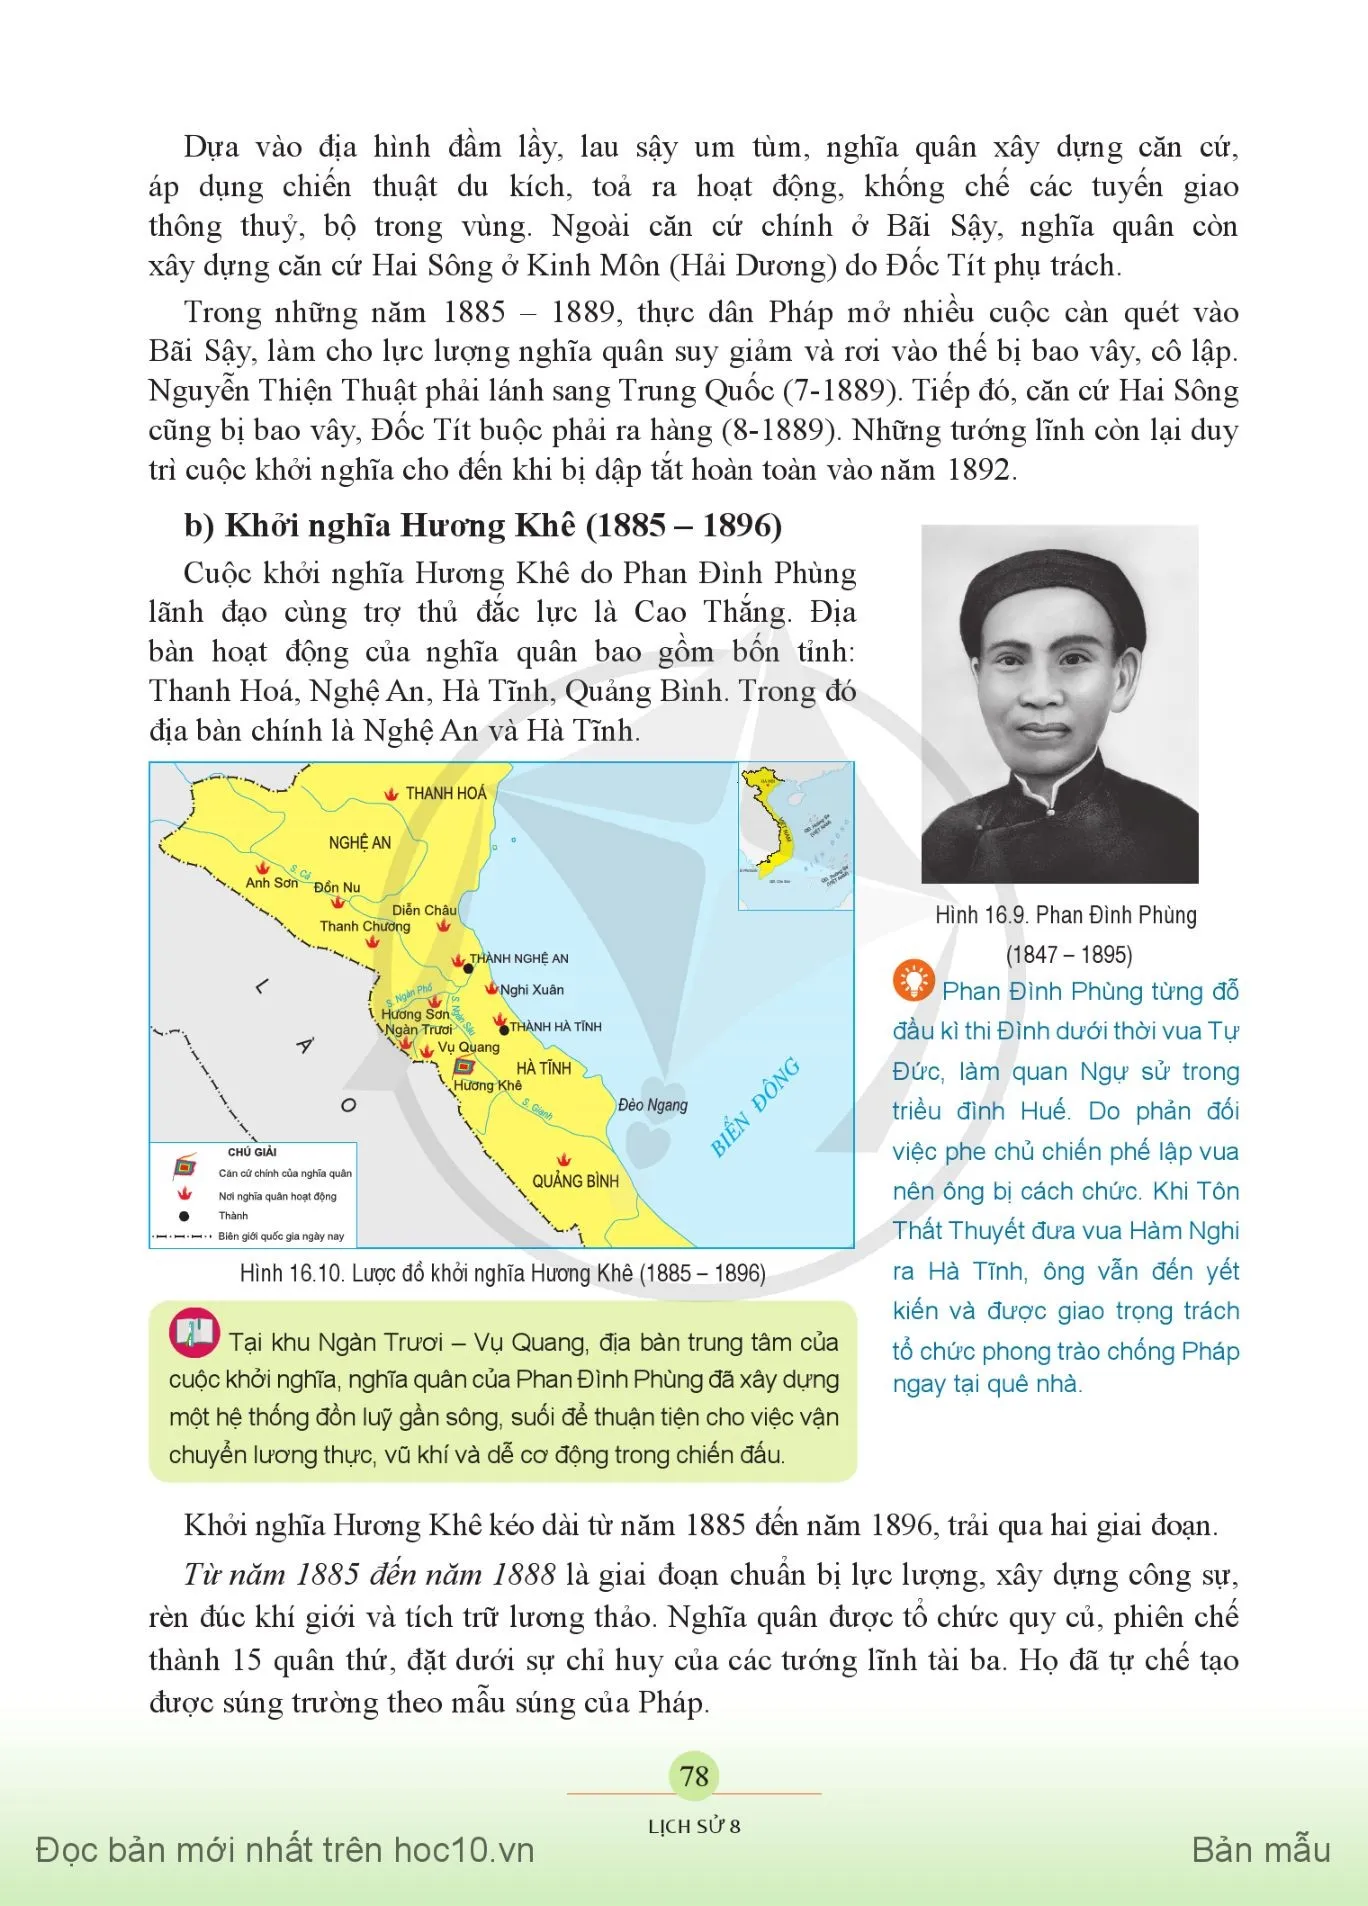 Bài 16. Việt Nam nửa sau thế kỉ XIX